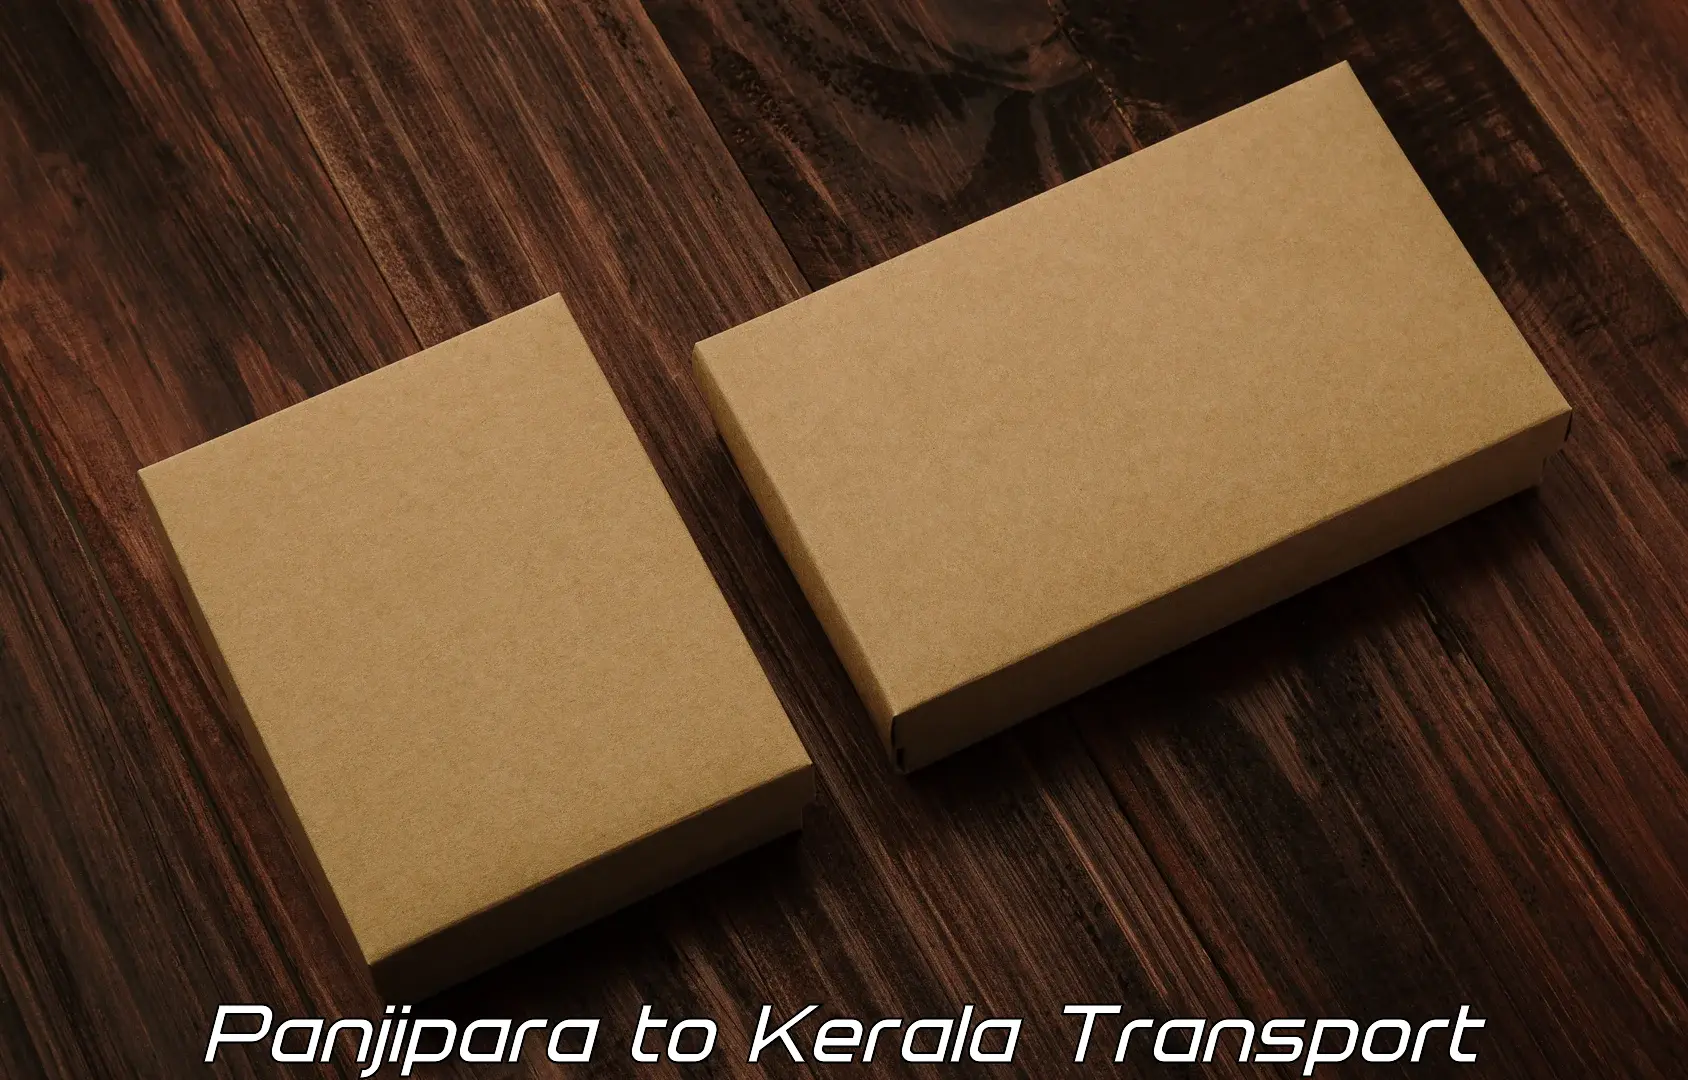 Two wheeler transport services Panjipara to Koothattukulam